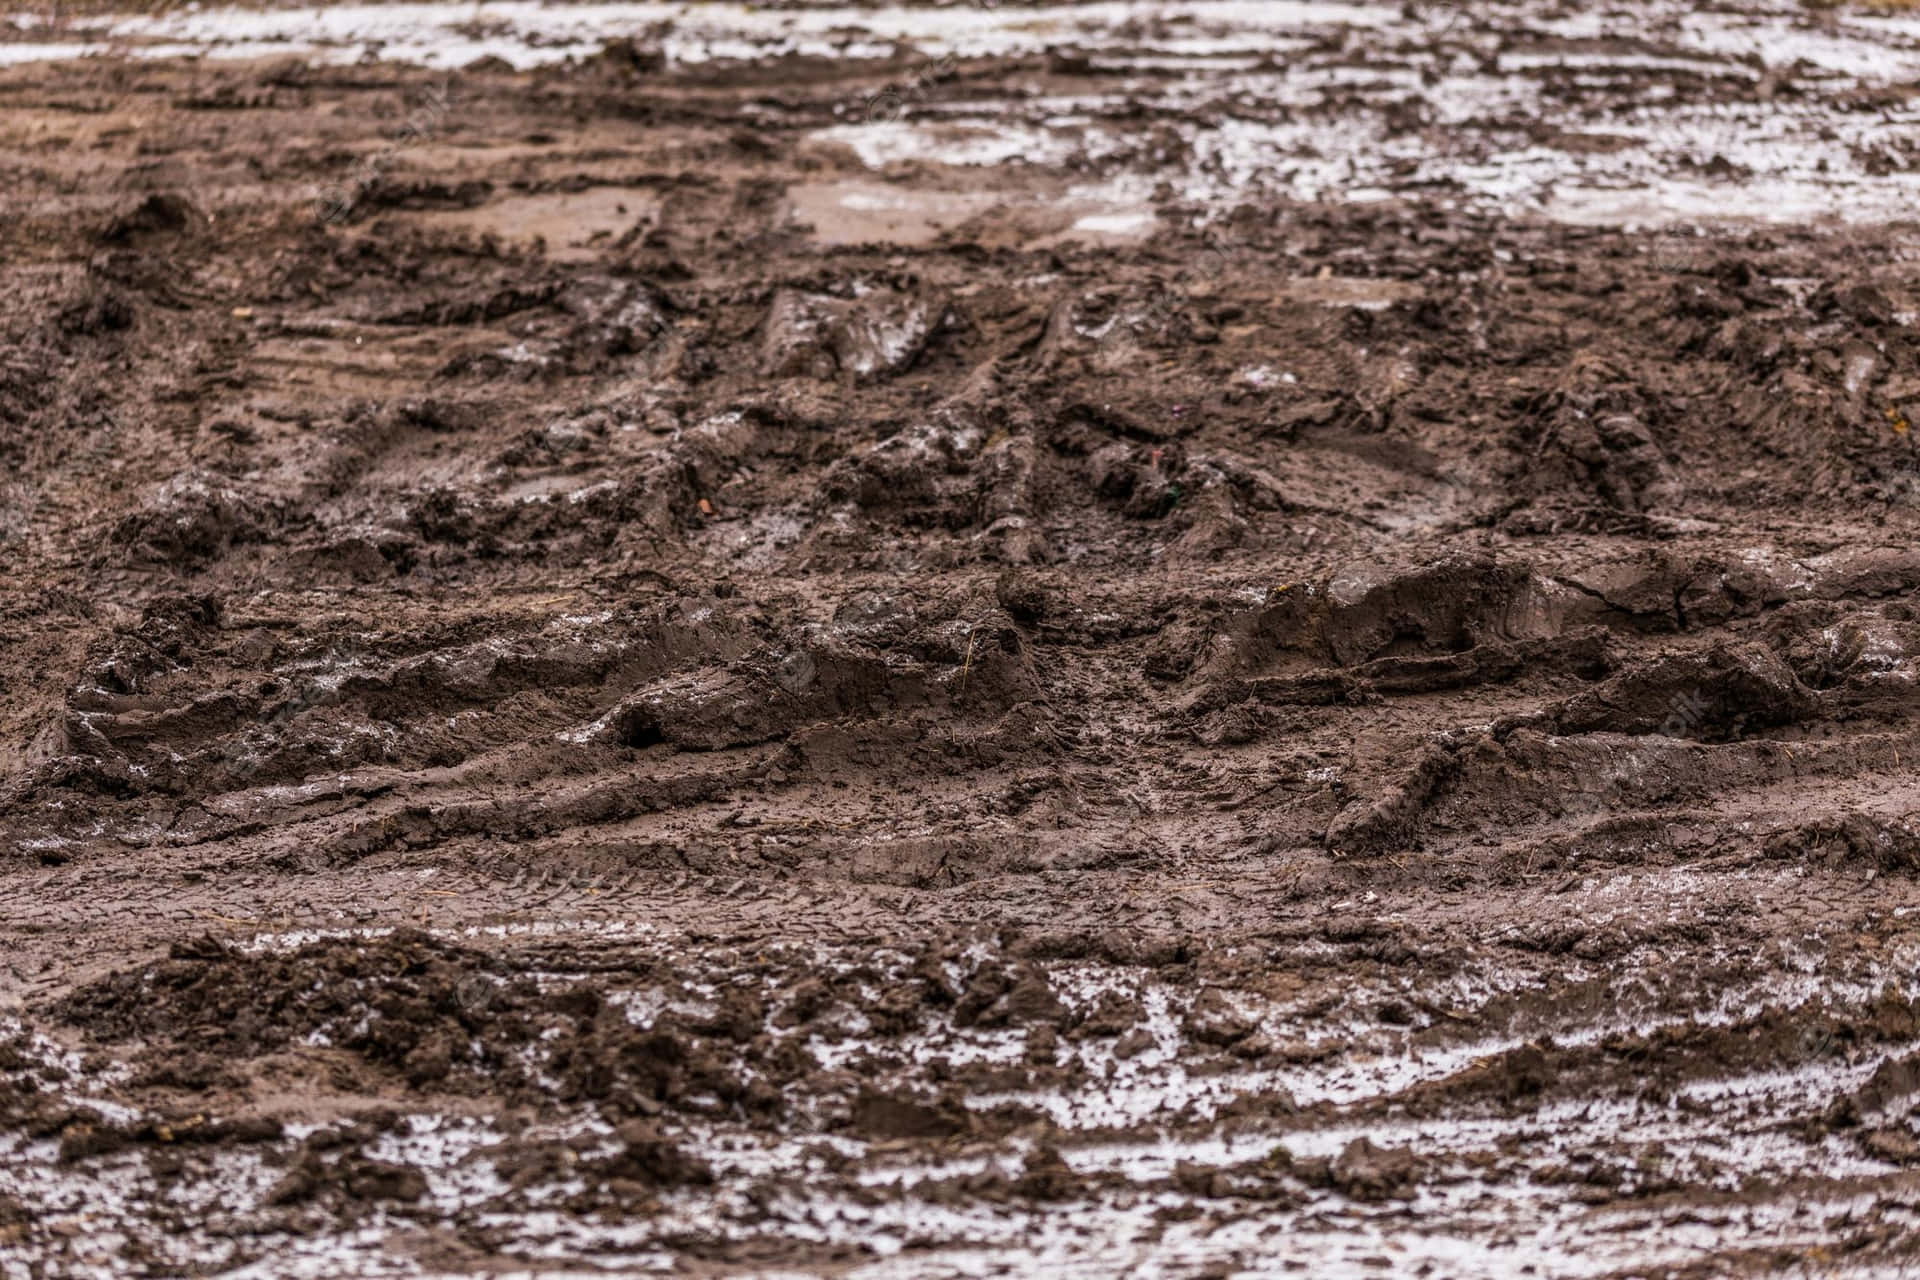 Enjoy Getting Dirty in the Mud